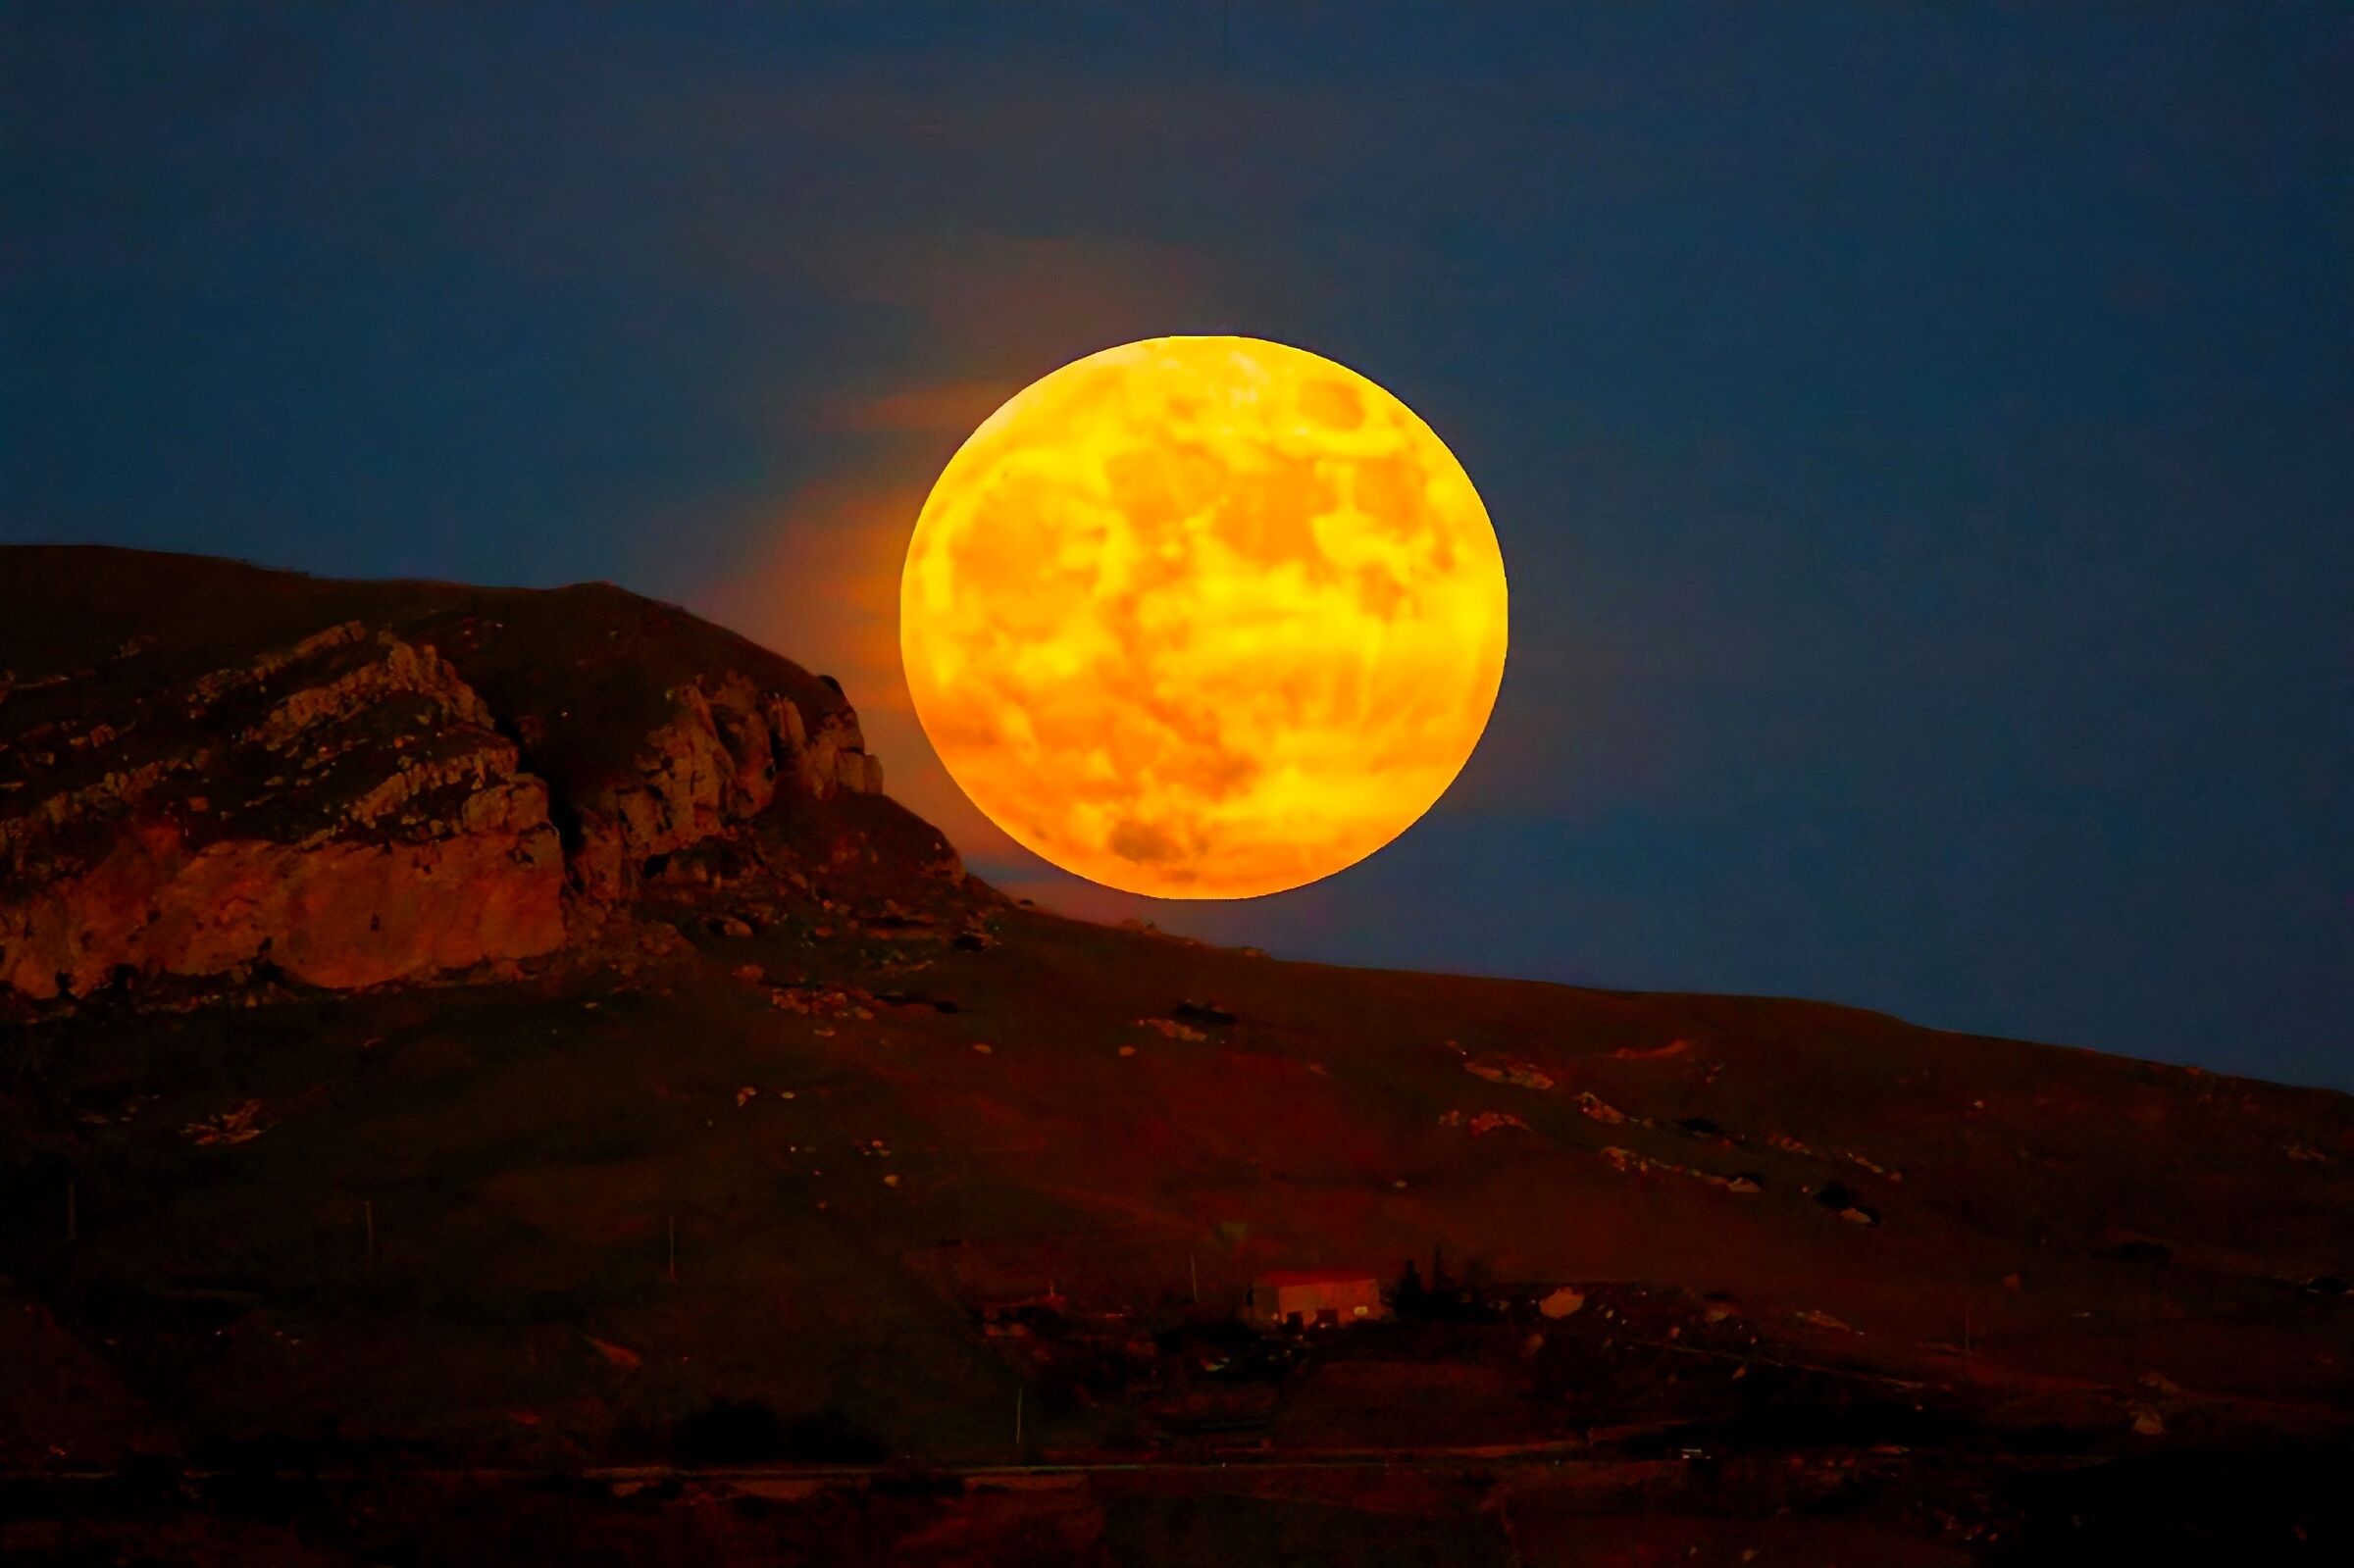 Full moon illuminates the landscape ...